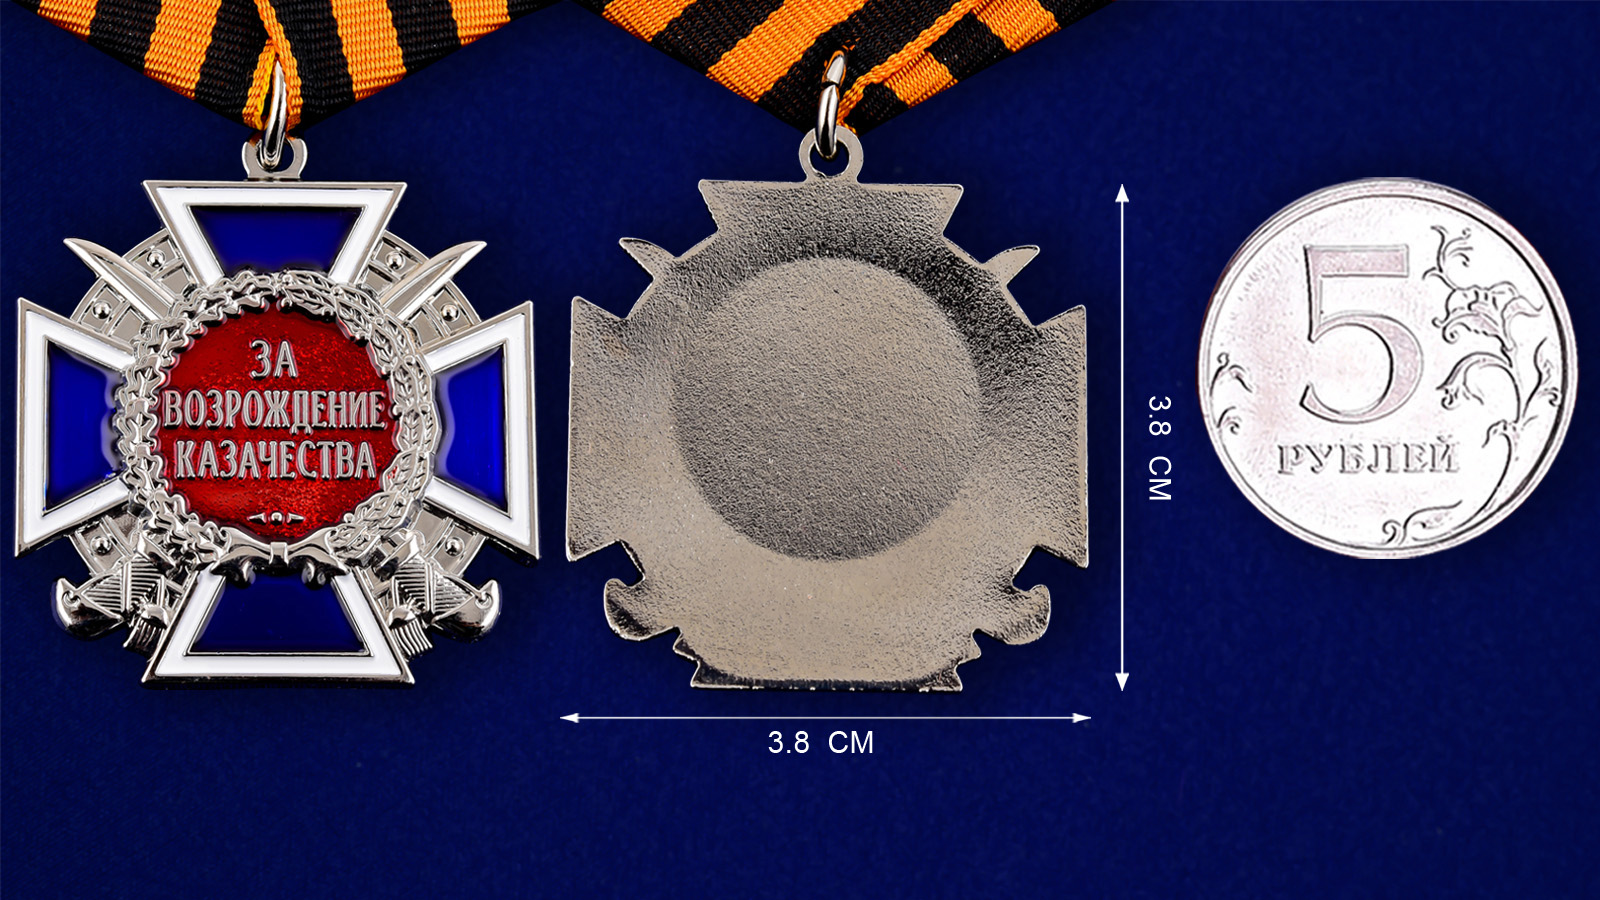 Медаль "За возрождение казачества" (2 степень) в наградном футляре из флока 